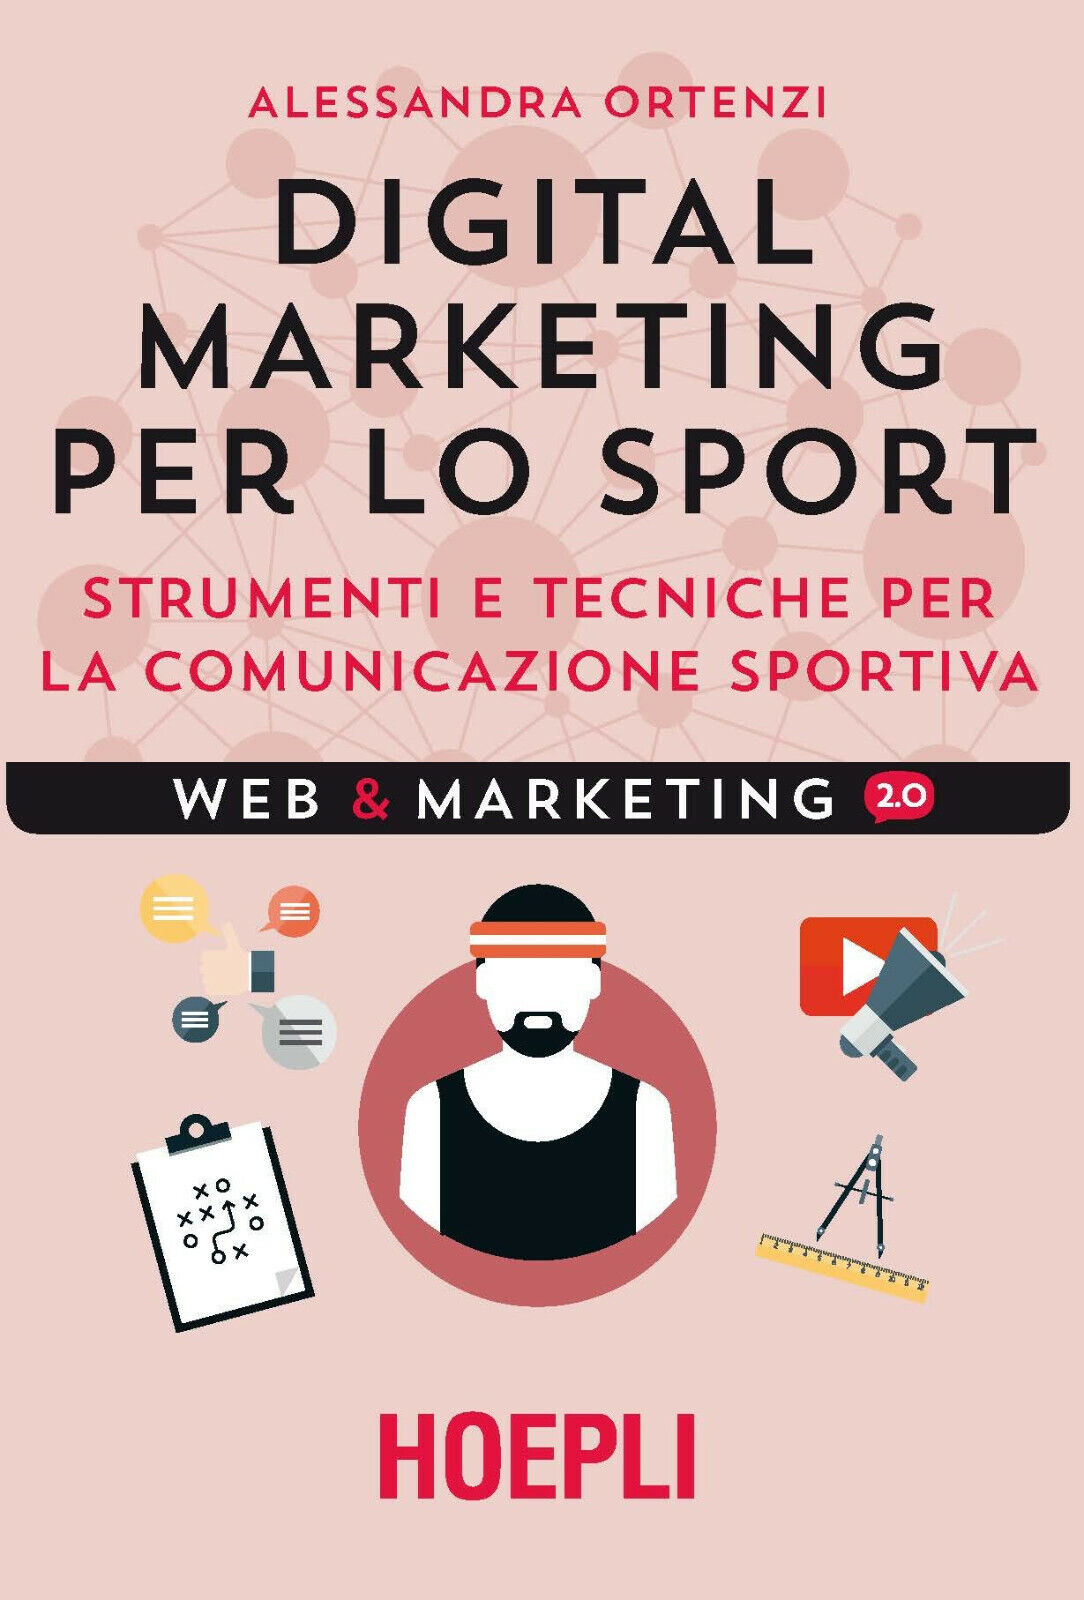 Digital marketing per lo sport - Alessandra Ortenzi Hoepli, 2017 libro usato